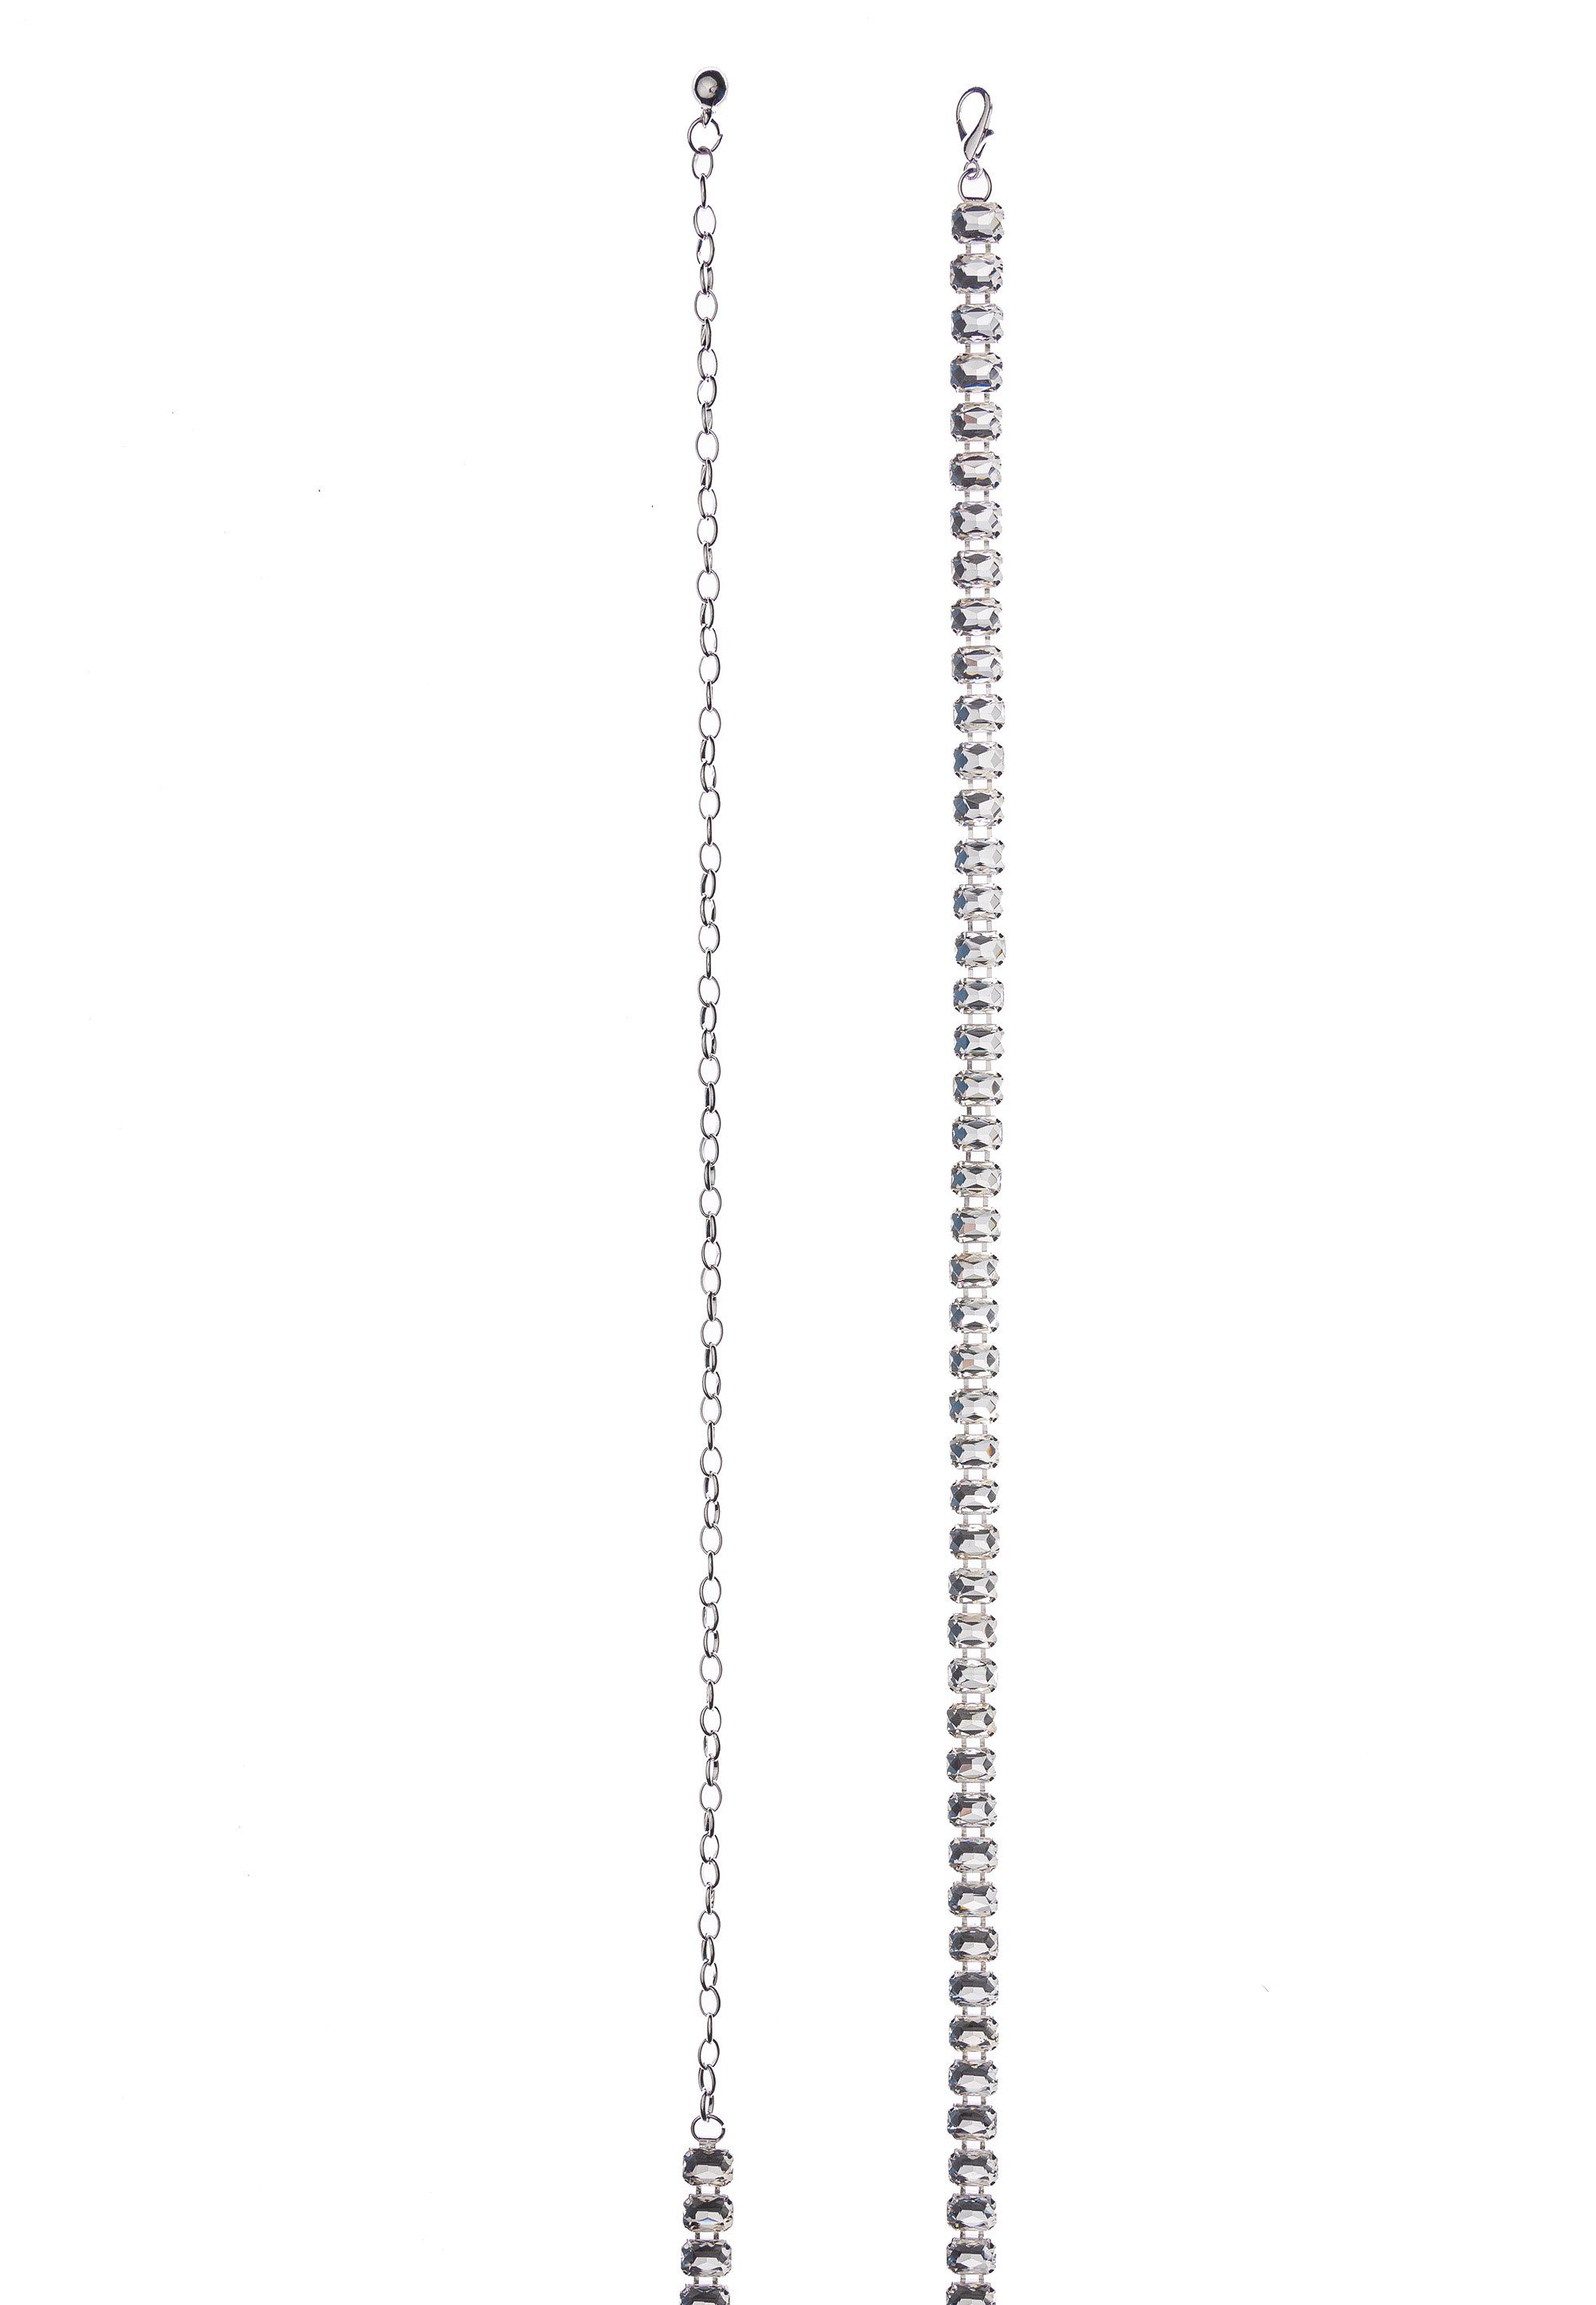 Taillenkette Accessoires im Design edlen funkelnden Hüftkette Cassandra Straßsteinen Kettengürtel mit